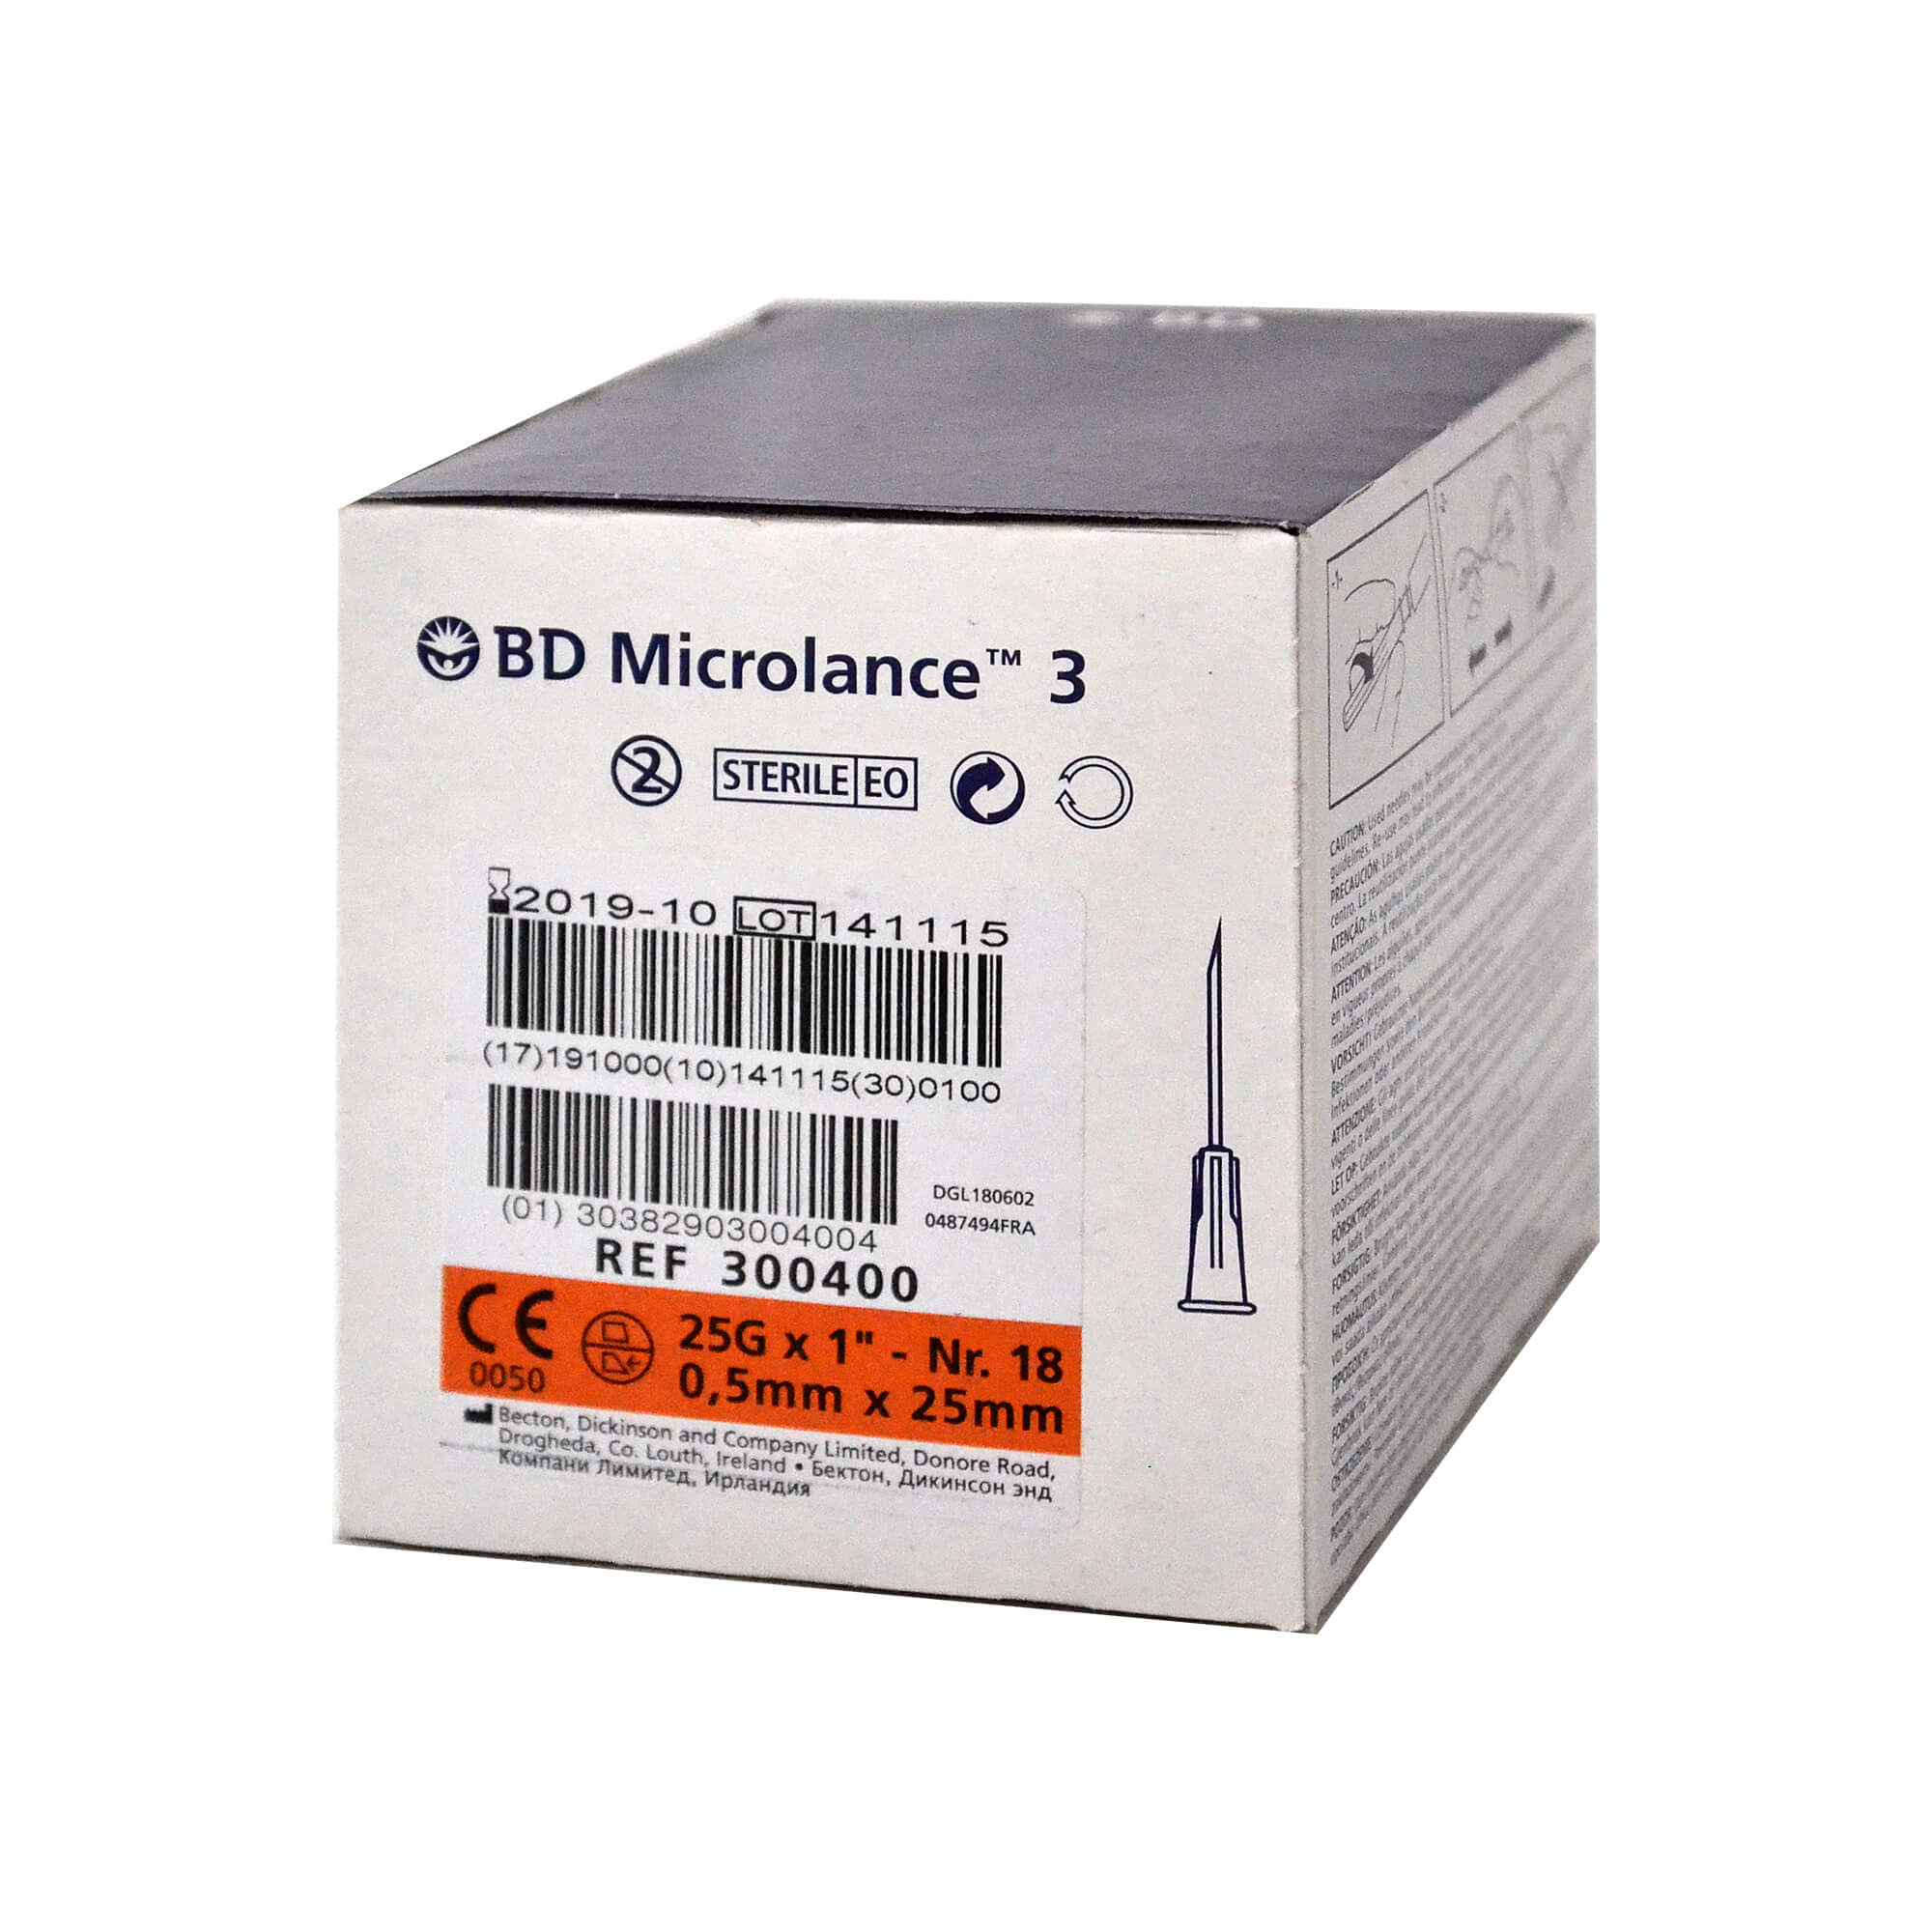 BD Microlance 3 Kanüle, 25 G x 1", Nr. 18, 0,5 mm x 25 mm.